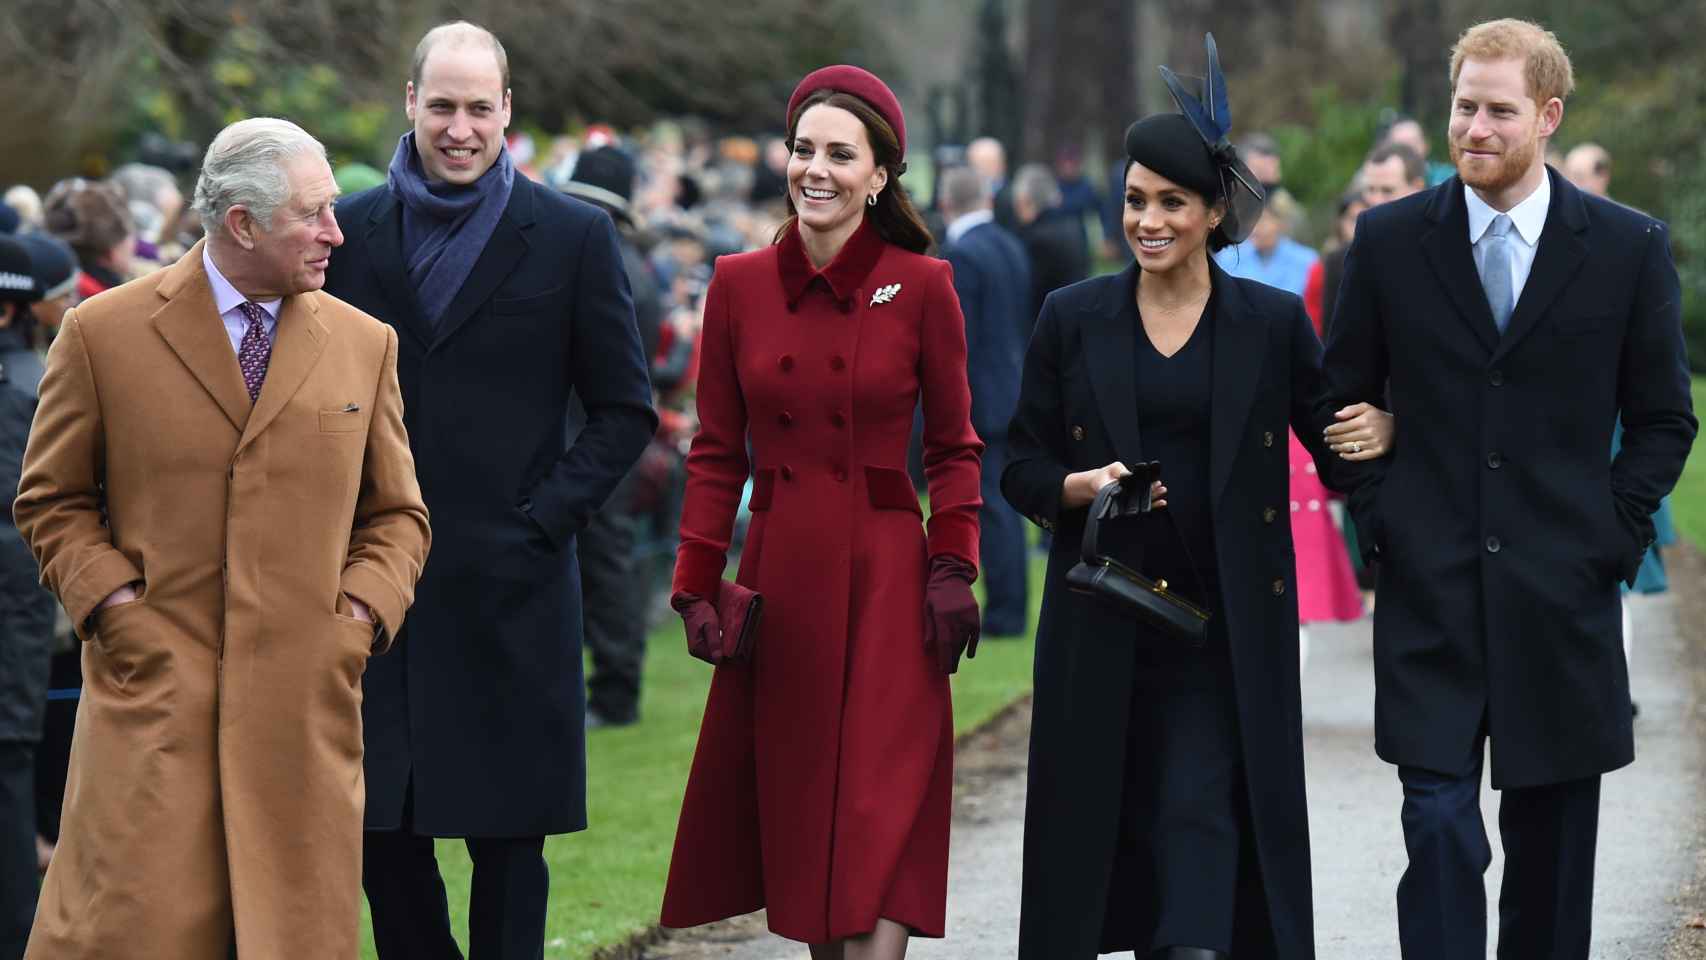 El príncipe Harry junto a su mujer, su padre y hermano, en una imagen de 2018.